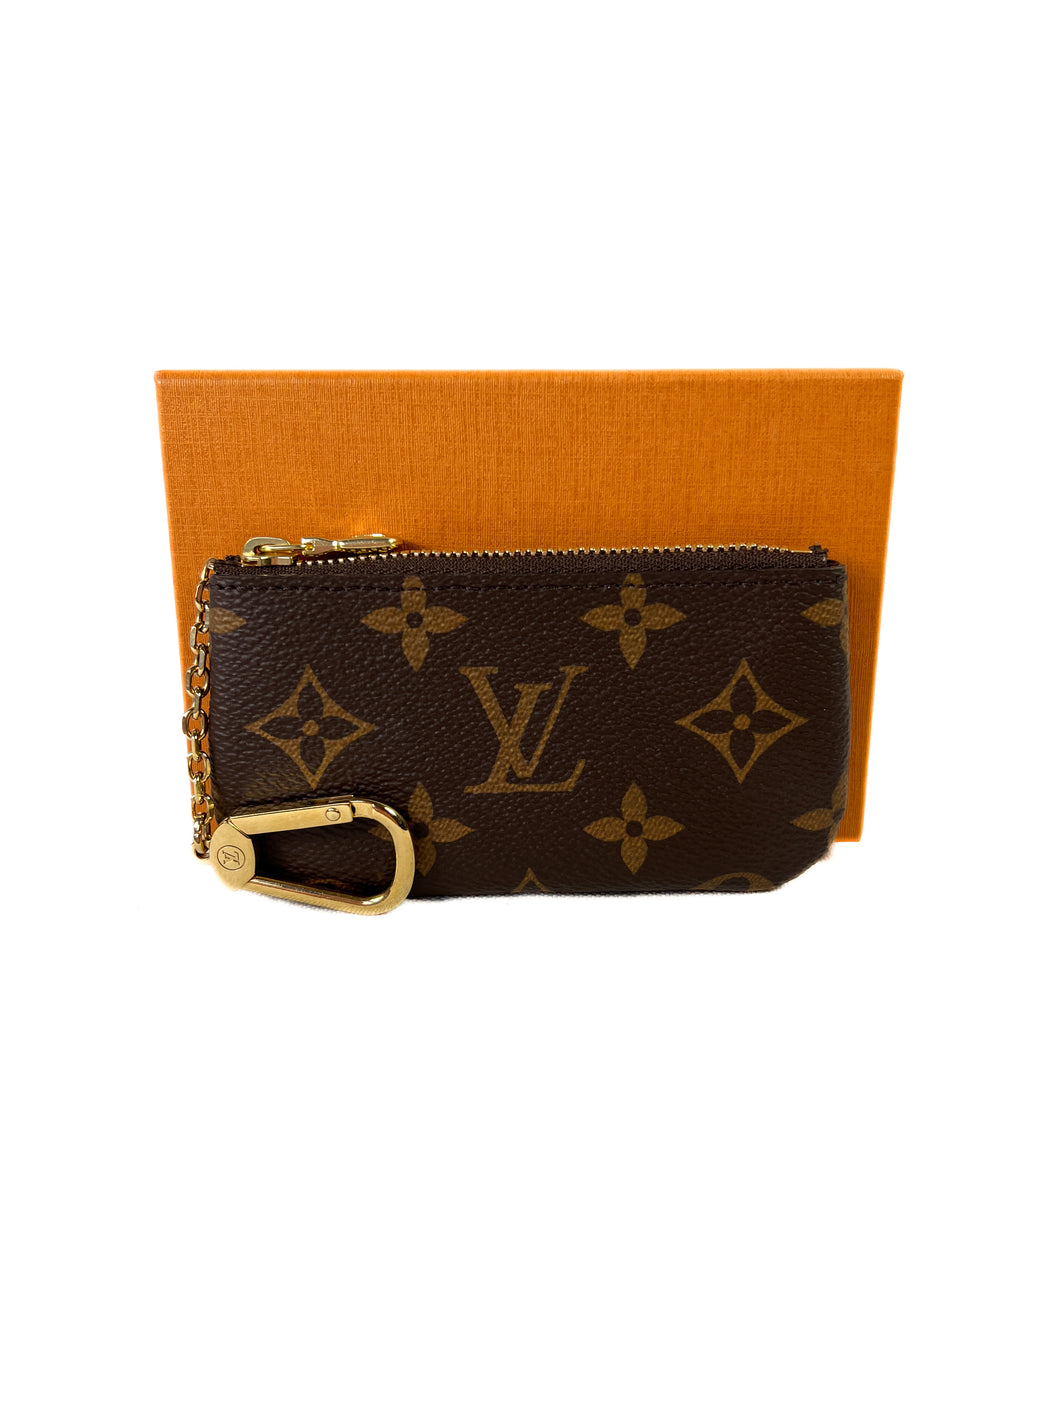 Louis Vuitton monogram key pouch 2020